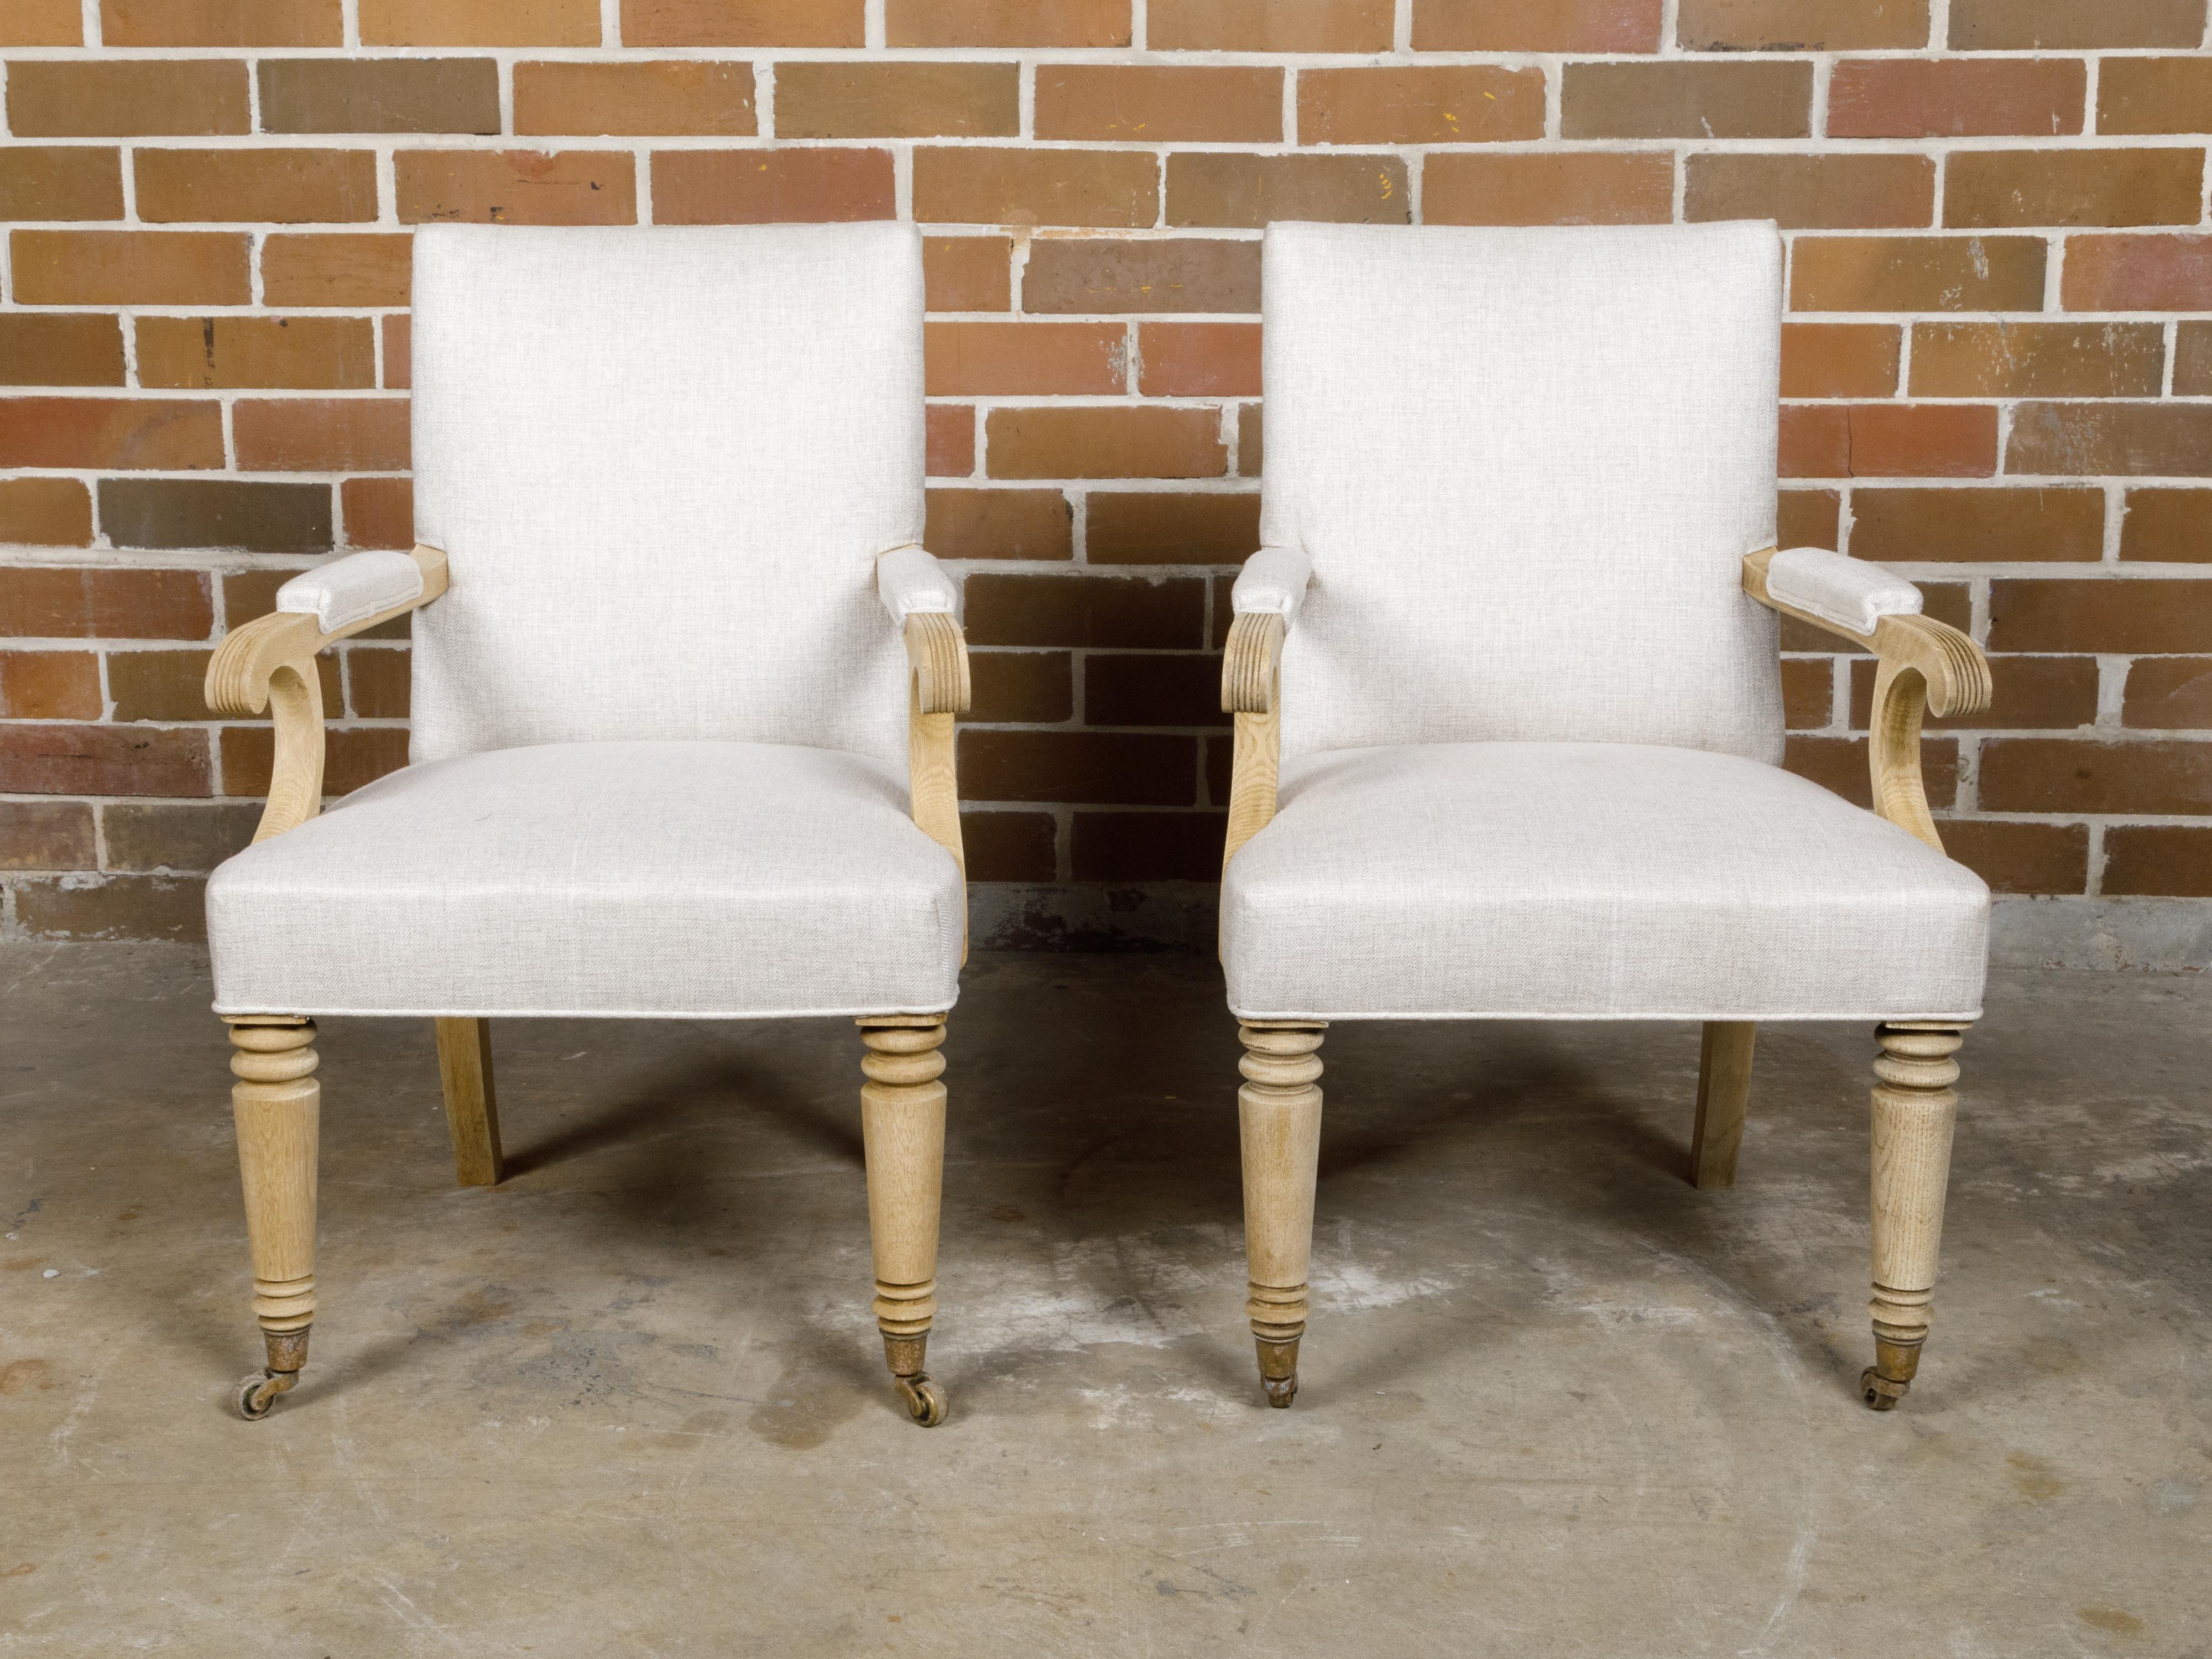 Ein Paar englische Sessel aus gebleichtem Holz der Jahrhundertwende um 1900 mit eleganten Armlehnen, geschwungenen Knöcheln, gedrechselten Beinen vorne und Säbelbeinen hinten. Entdecken Sie die unaufdringliche Eleganz dieser englischen Sessel aus